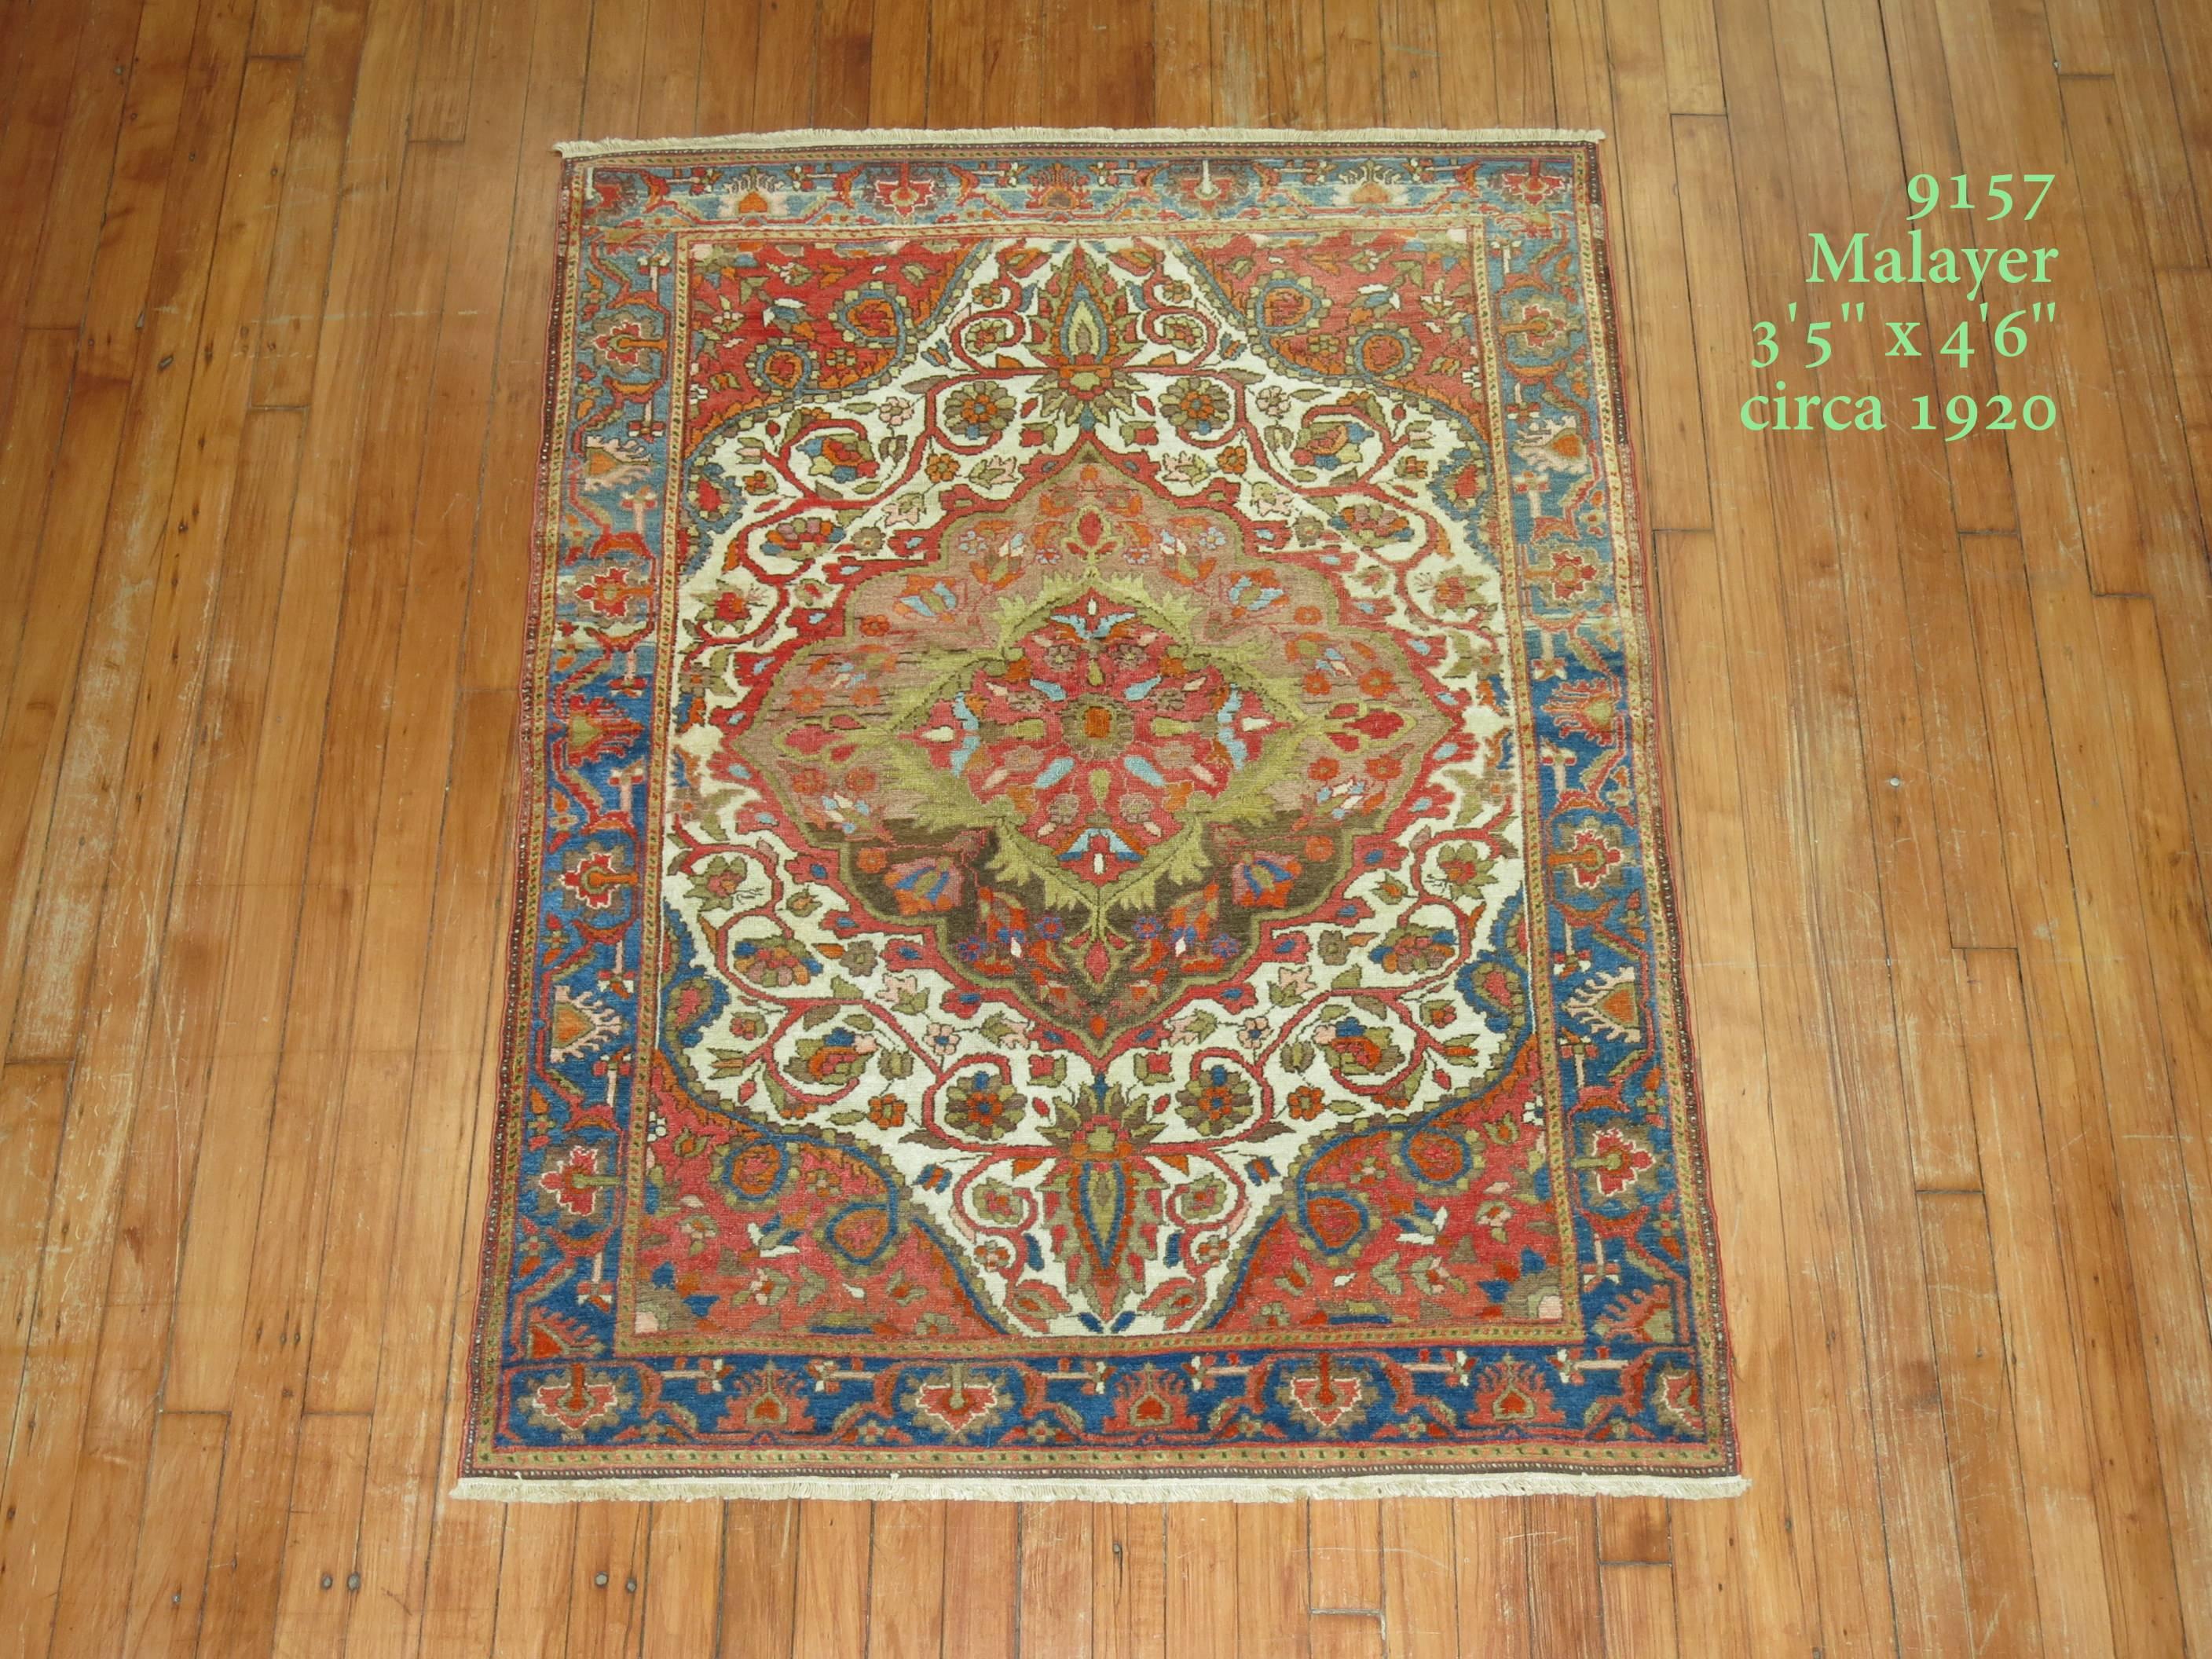 Ein farbenfroher, formal feiner, qualitativ hochwertiger persischer Malayer-Teppich für Kenner. Elfenbeinfarbener Grund mit sanftem, braunem Medaillon, lindgrünen Akzenten, rostorangefarbenen Ecken und himmelblauem Rand. Teppiche dieser Qualität